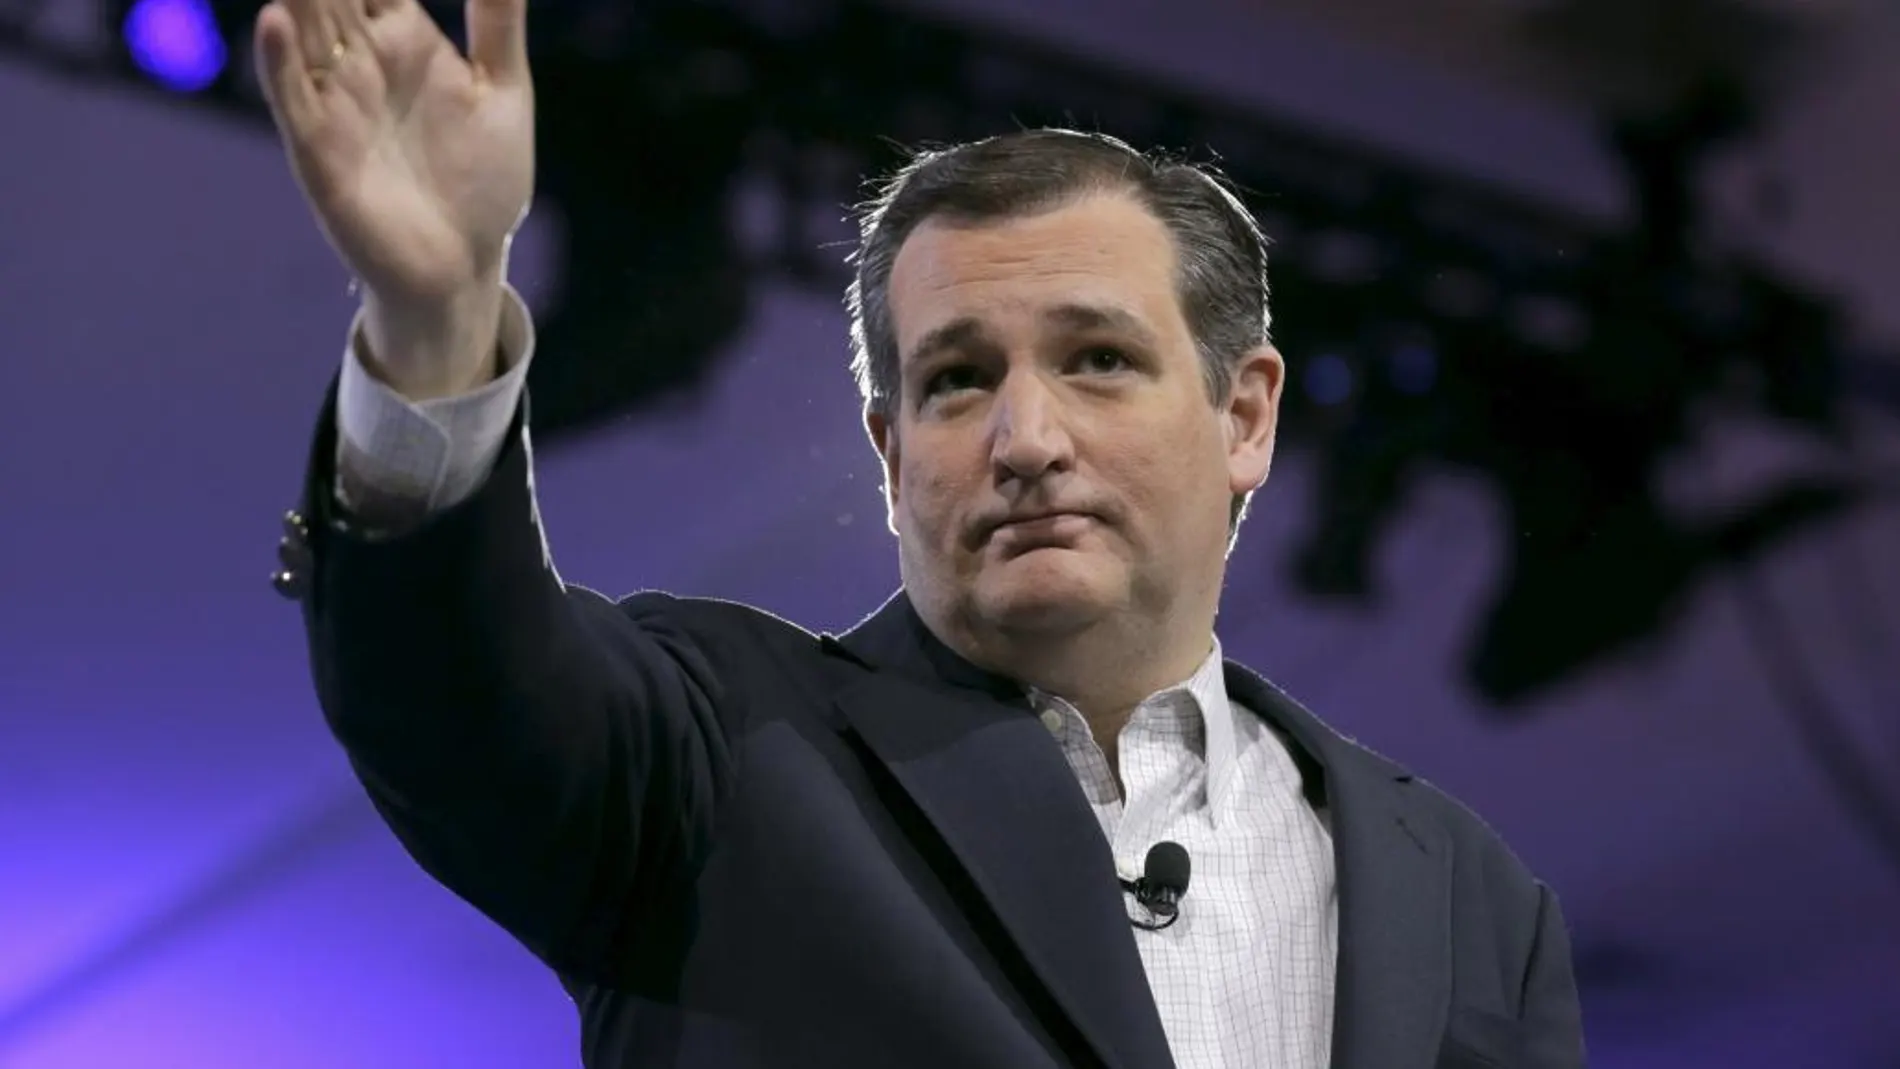 Ted Cruz abandona la carrera a la nominación republicana